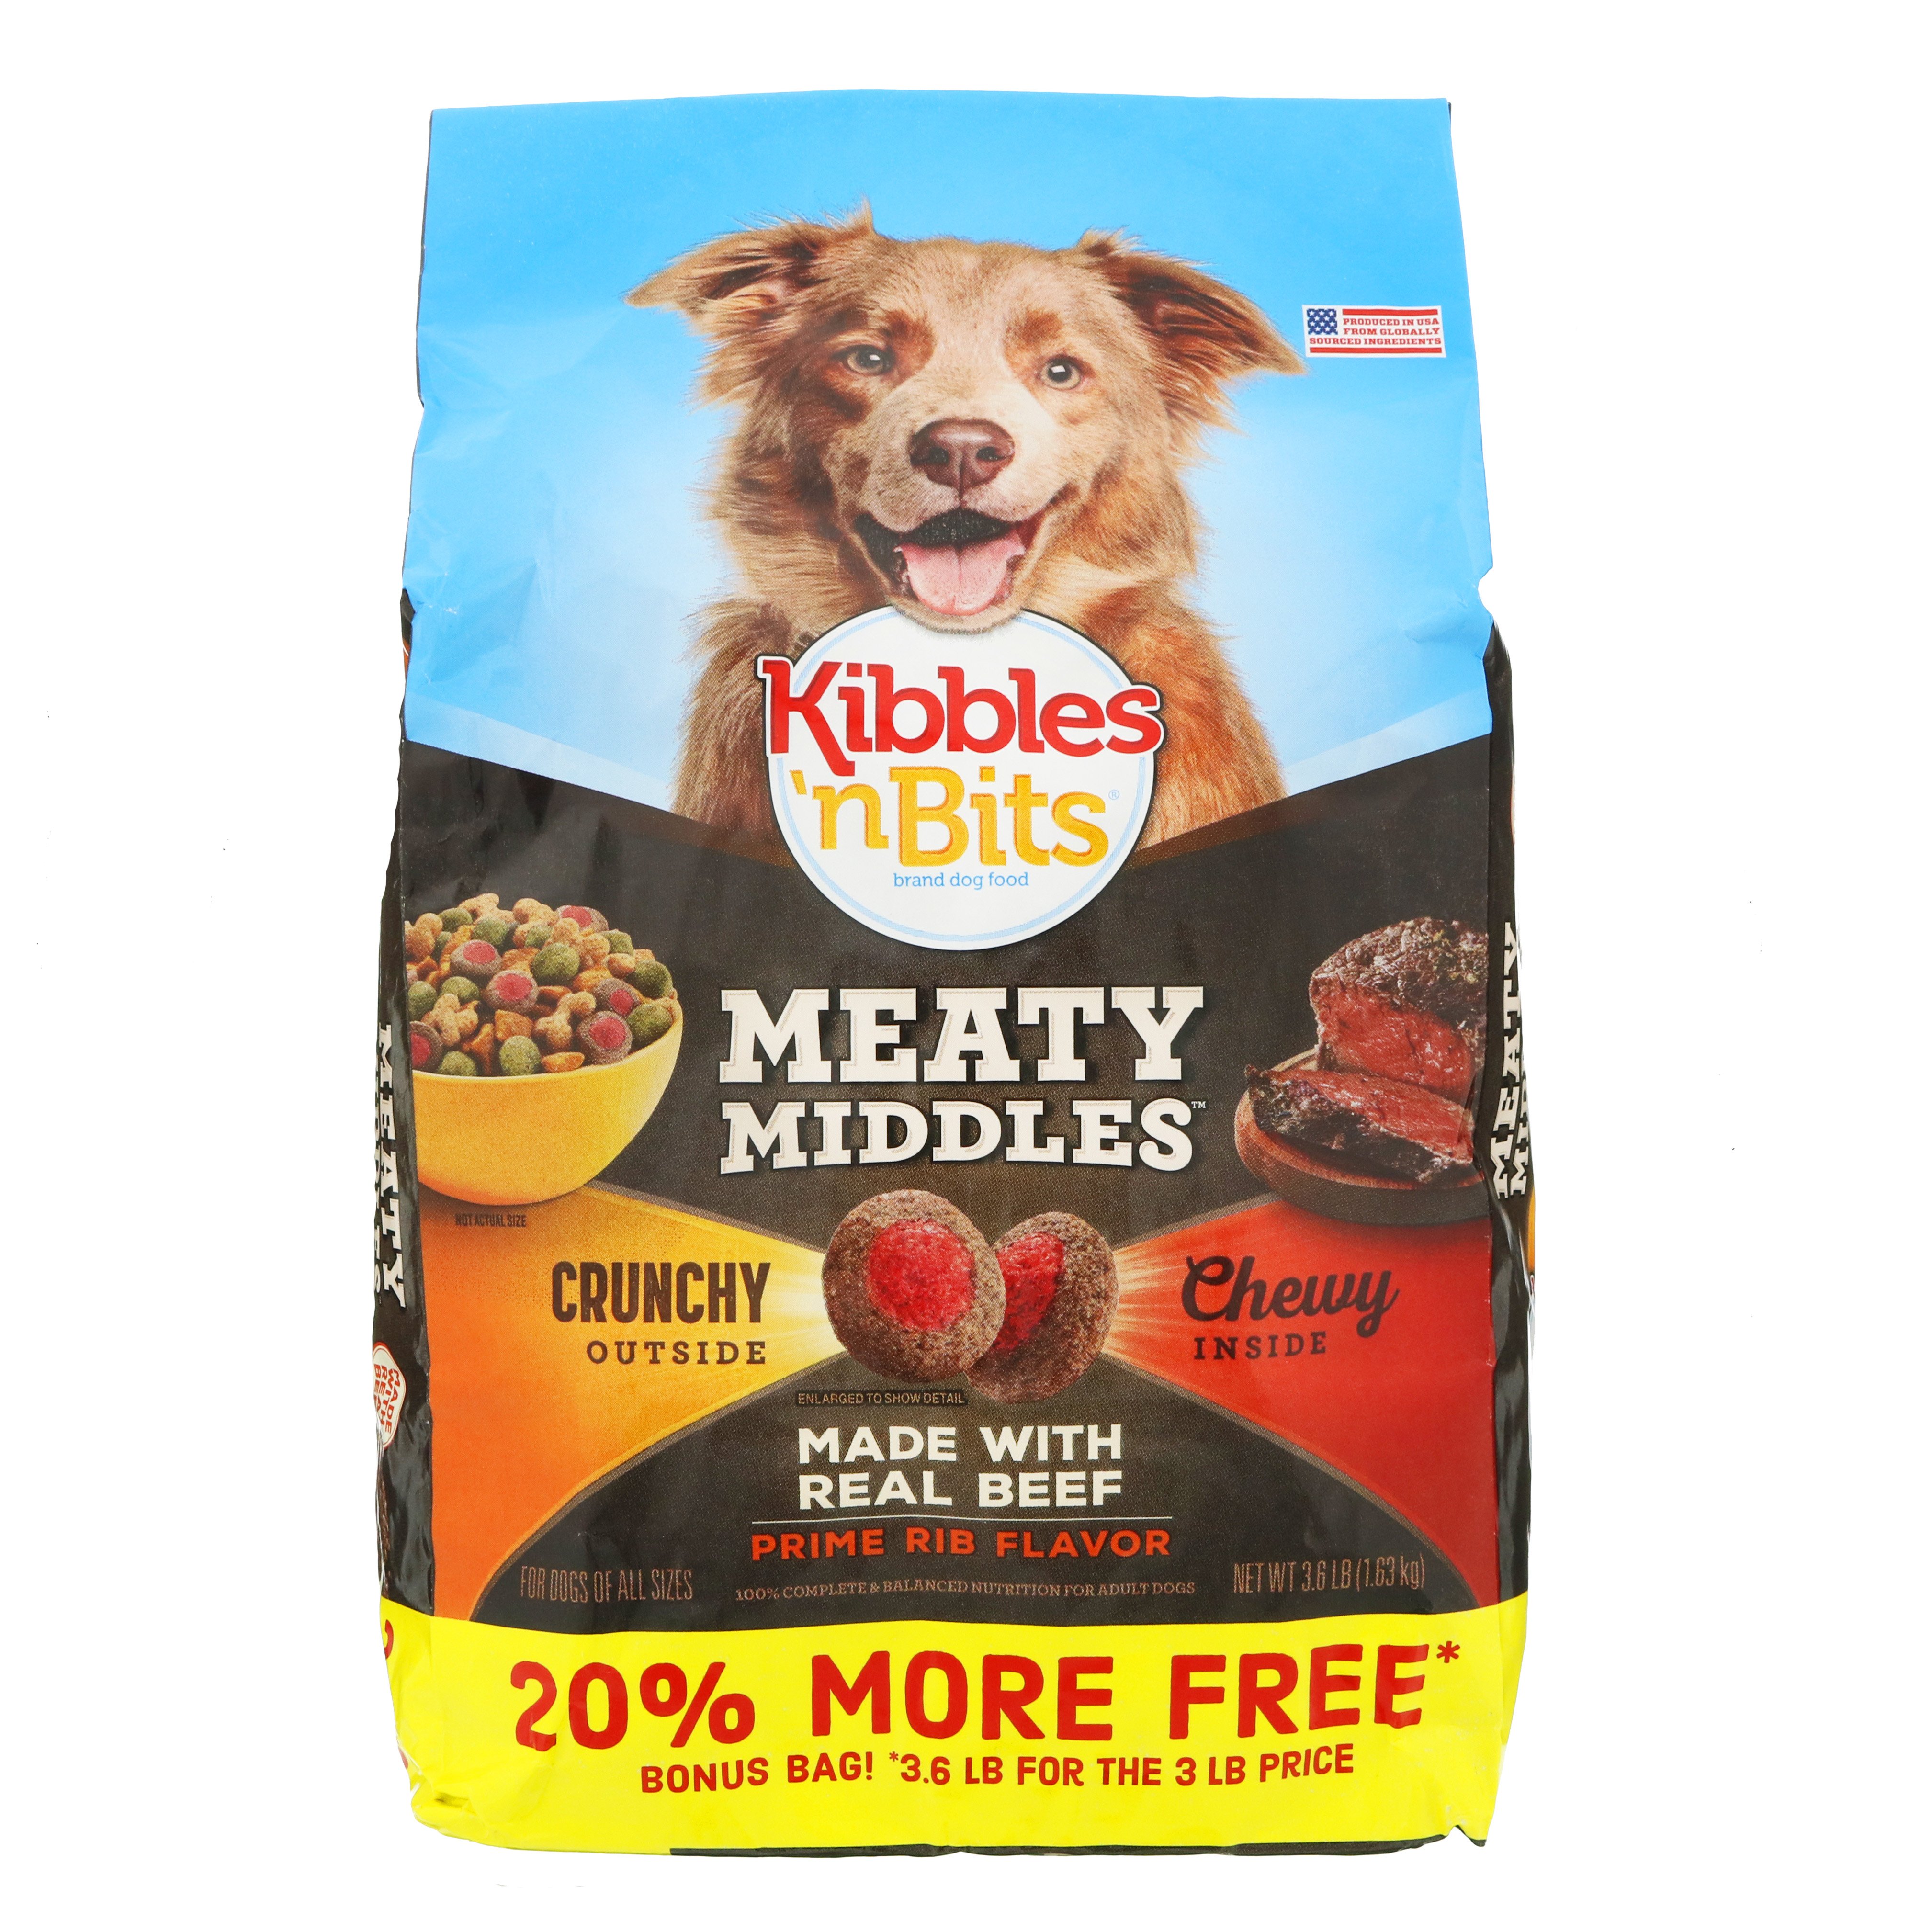 kibbles and bits dog food